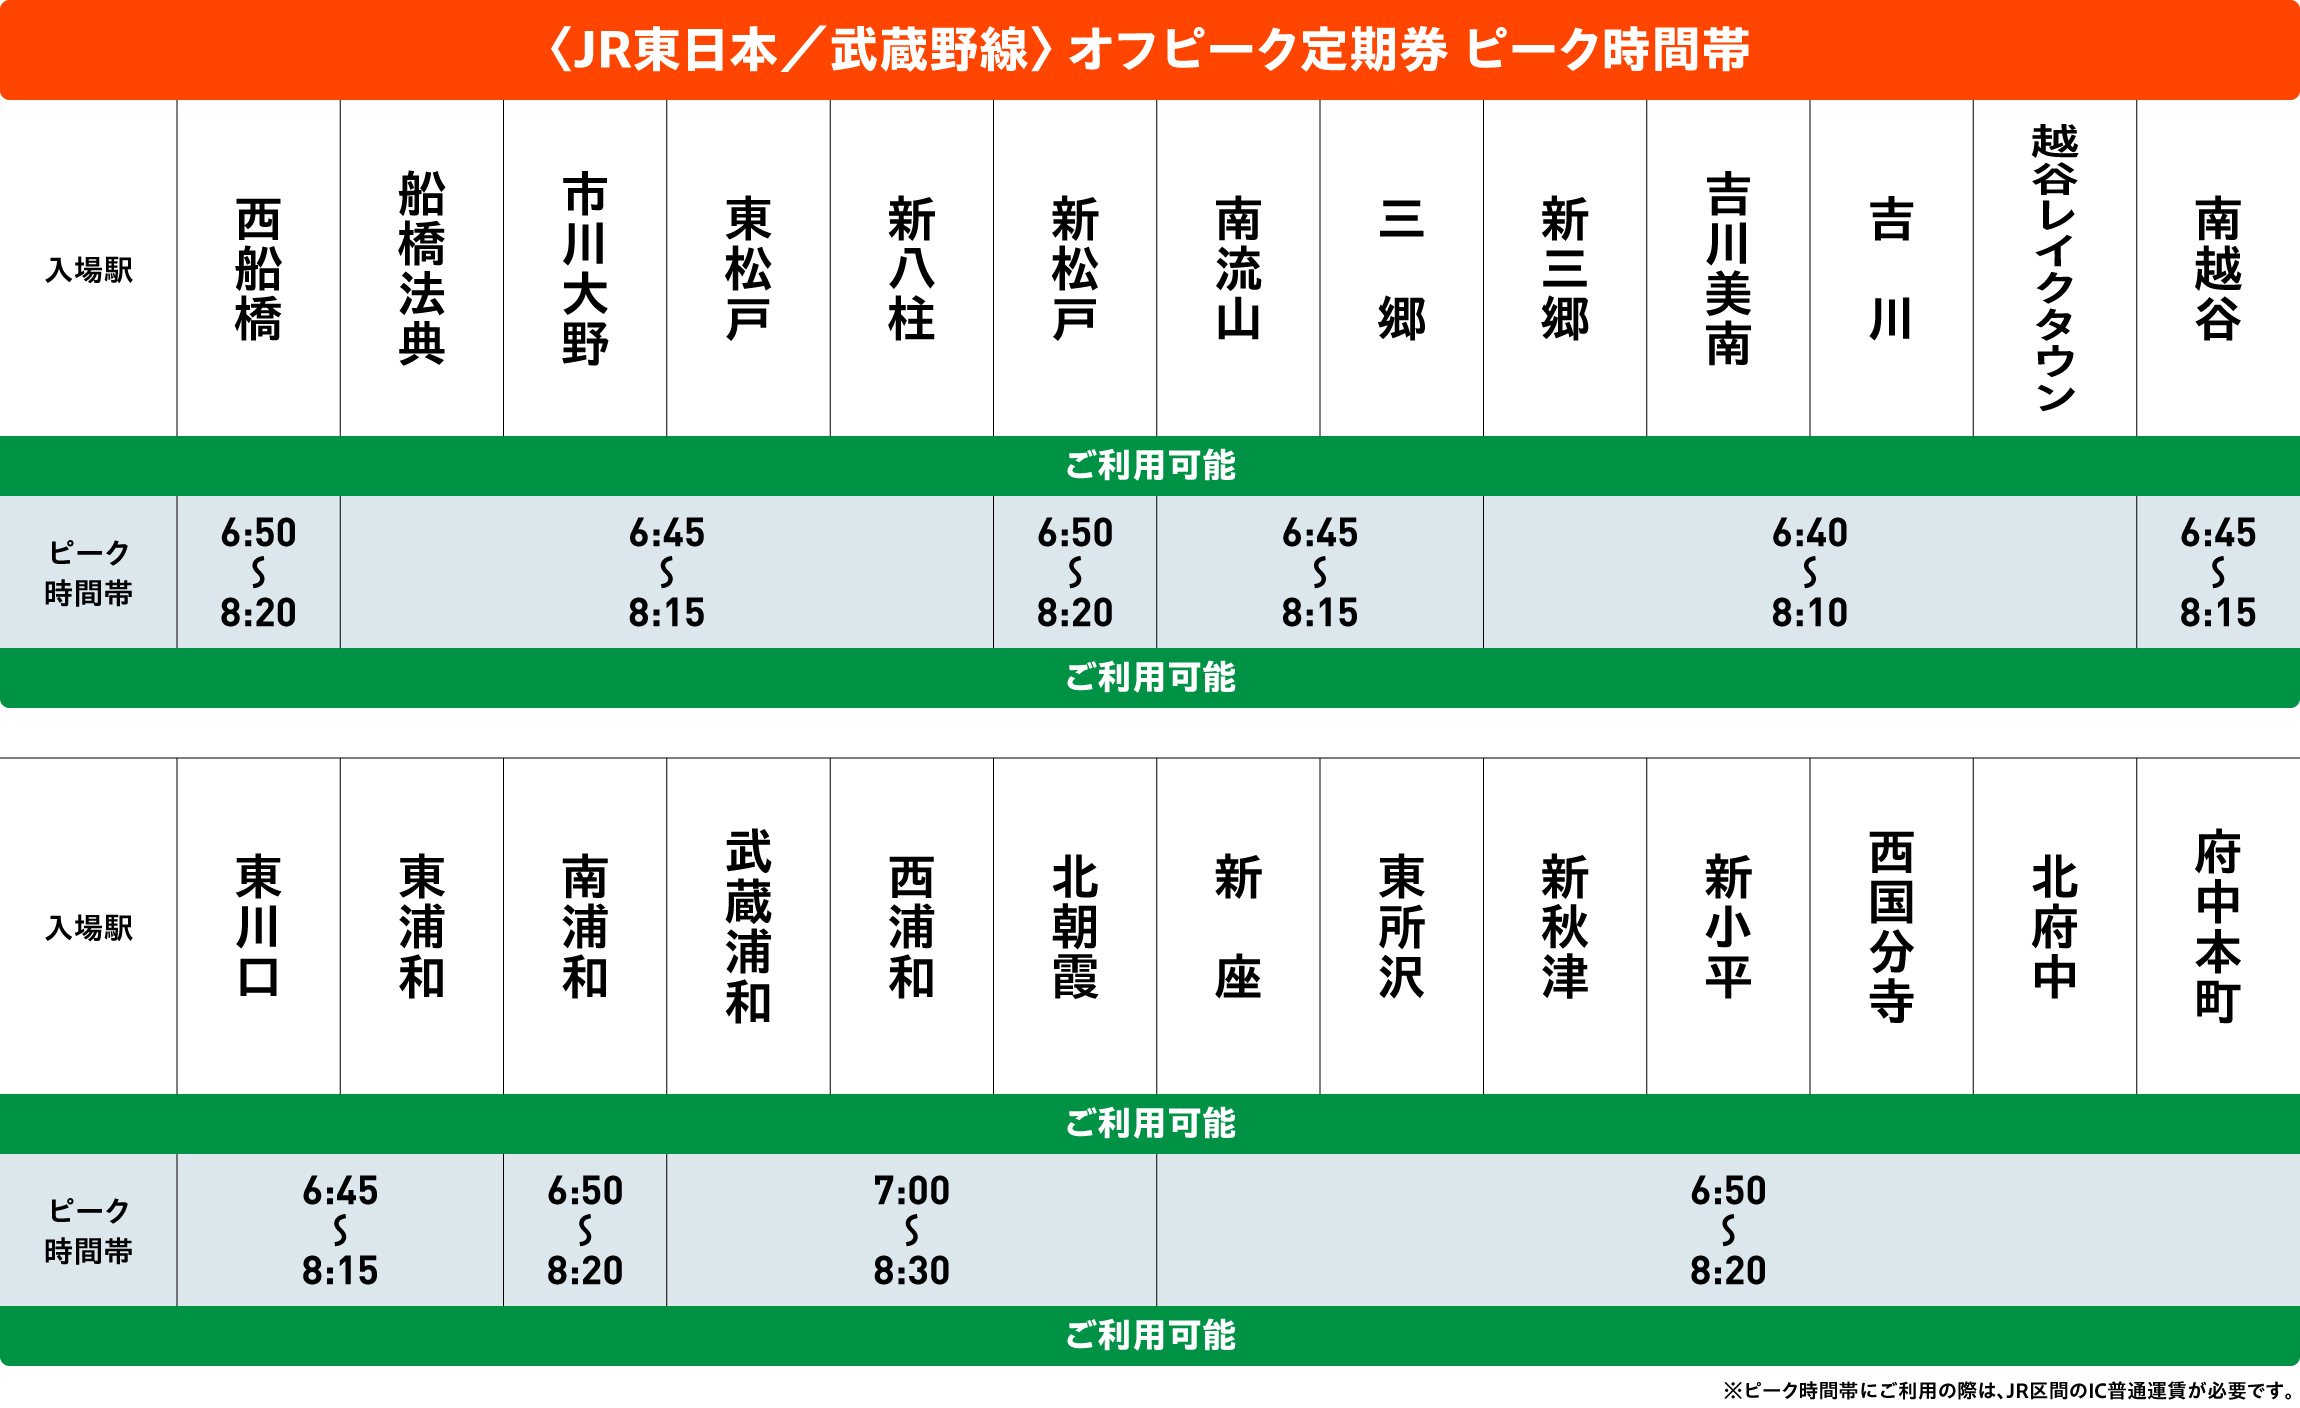 武蔵野線オフピークポイントサービス対象時間帯